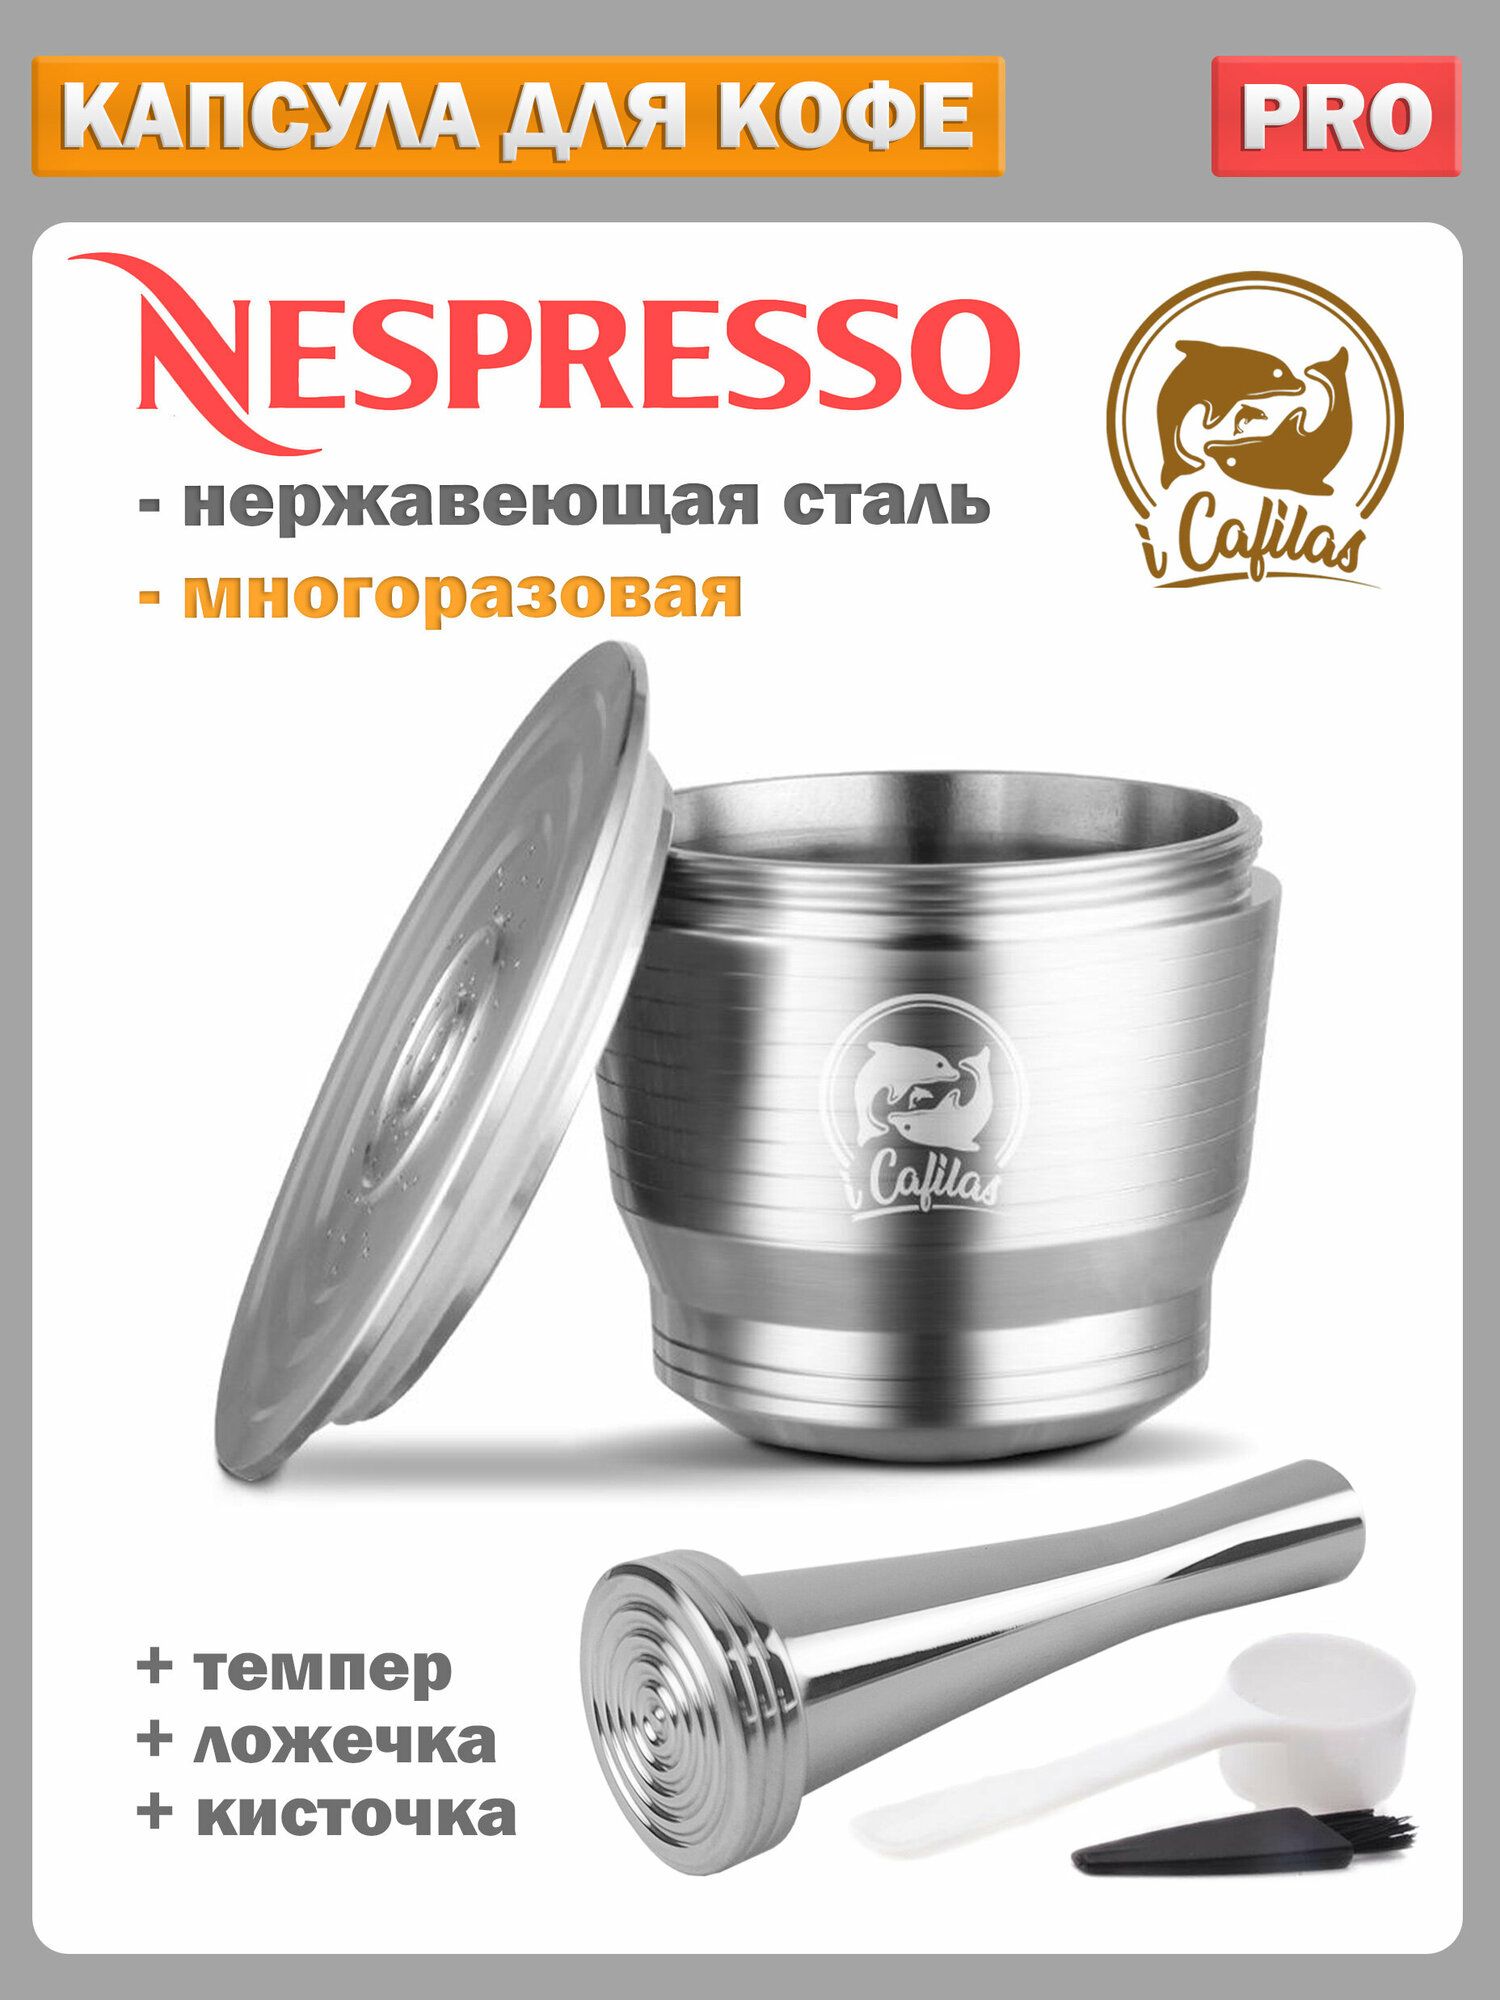 Капсула для кофемашины nespresso многоразовая нержавеющая сталь в наборе с темпером, мерной ложечкой и щеткой